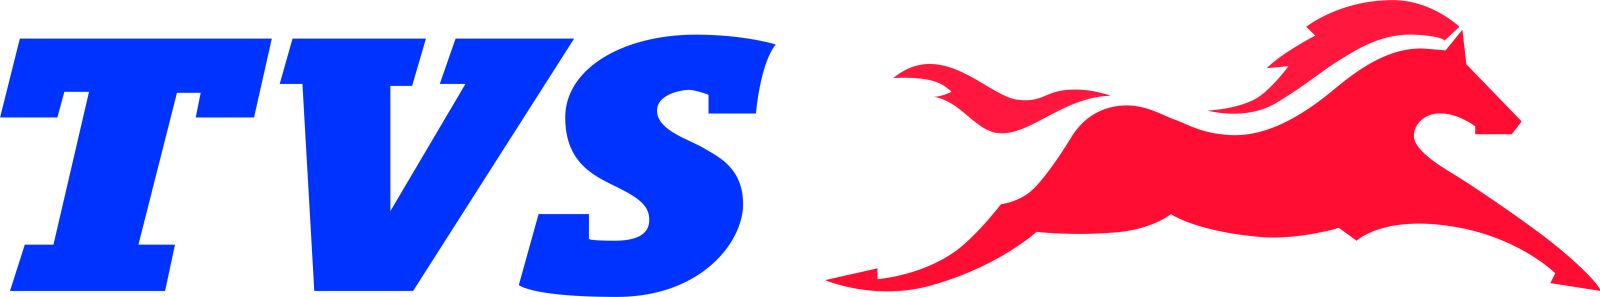 TVS-Motor-Company-Logo